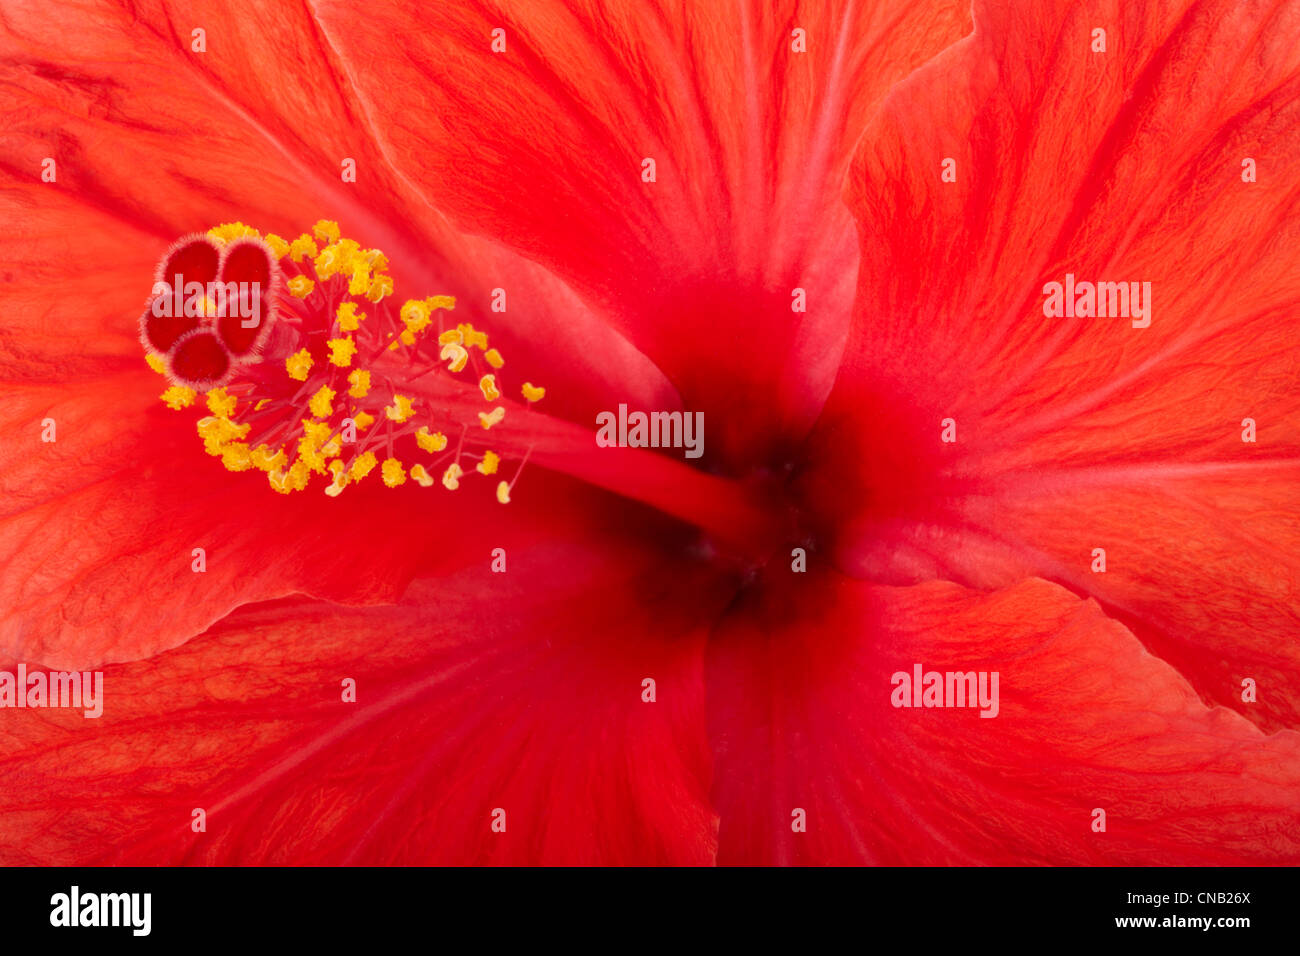 Flor de hibiscus rojo textura del fondo Foto de stock